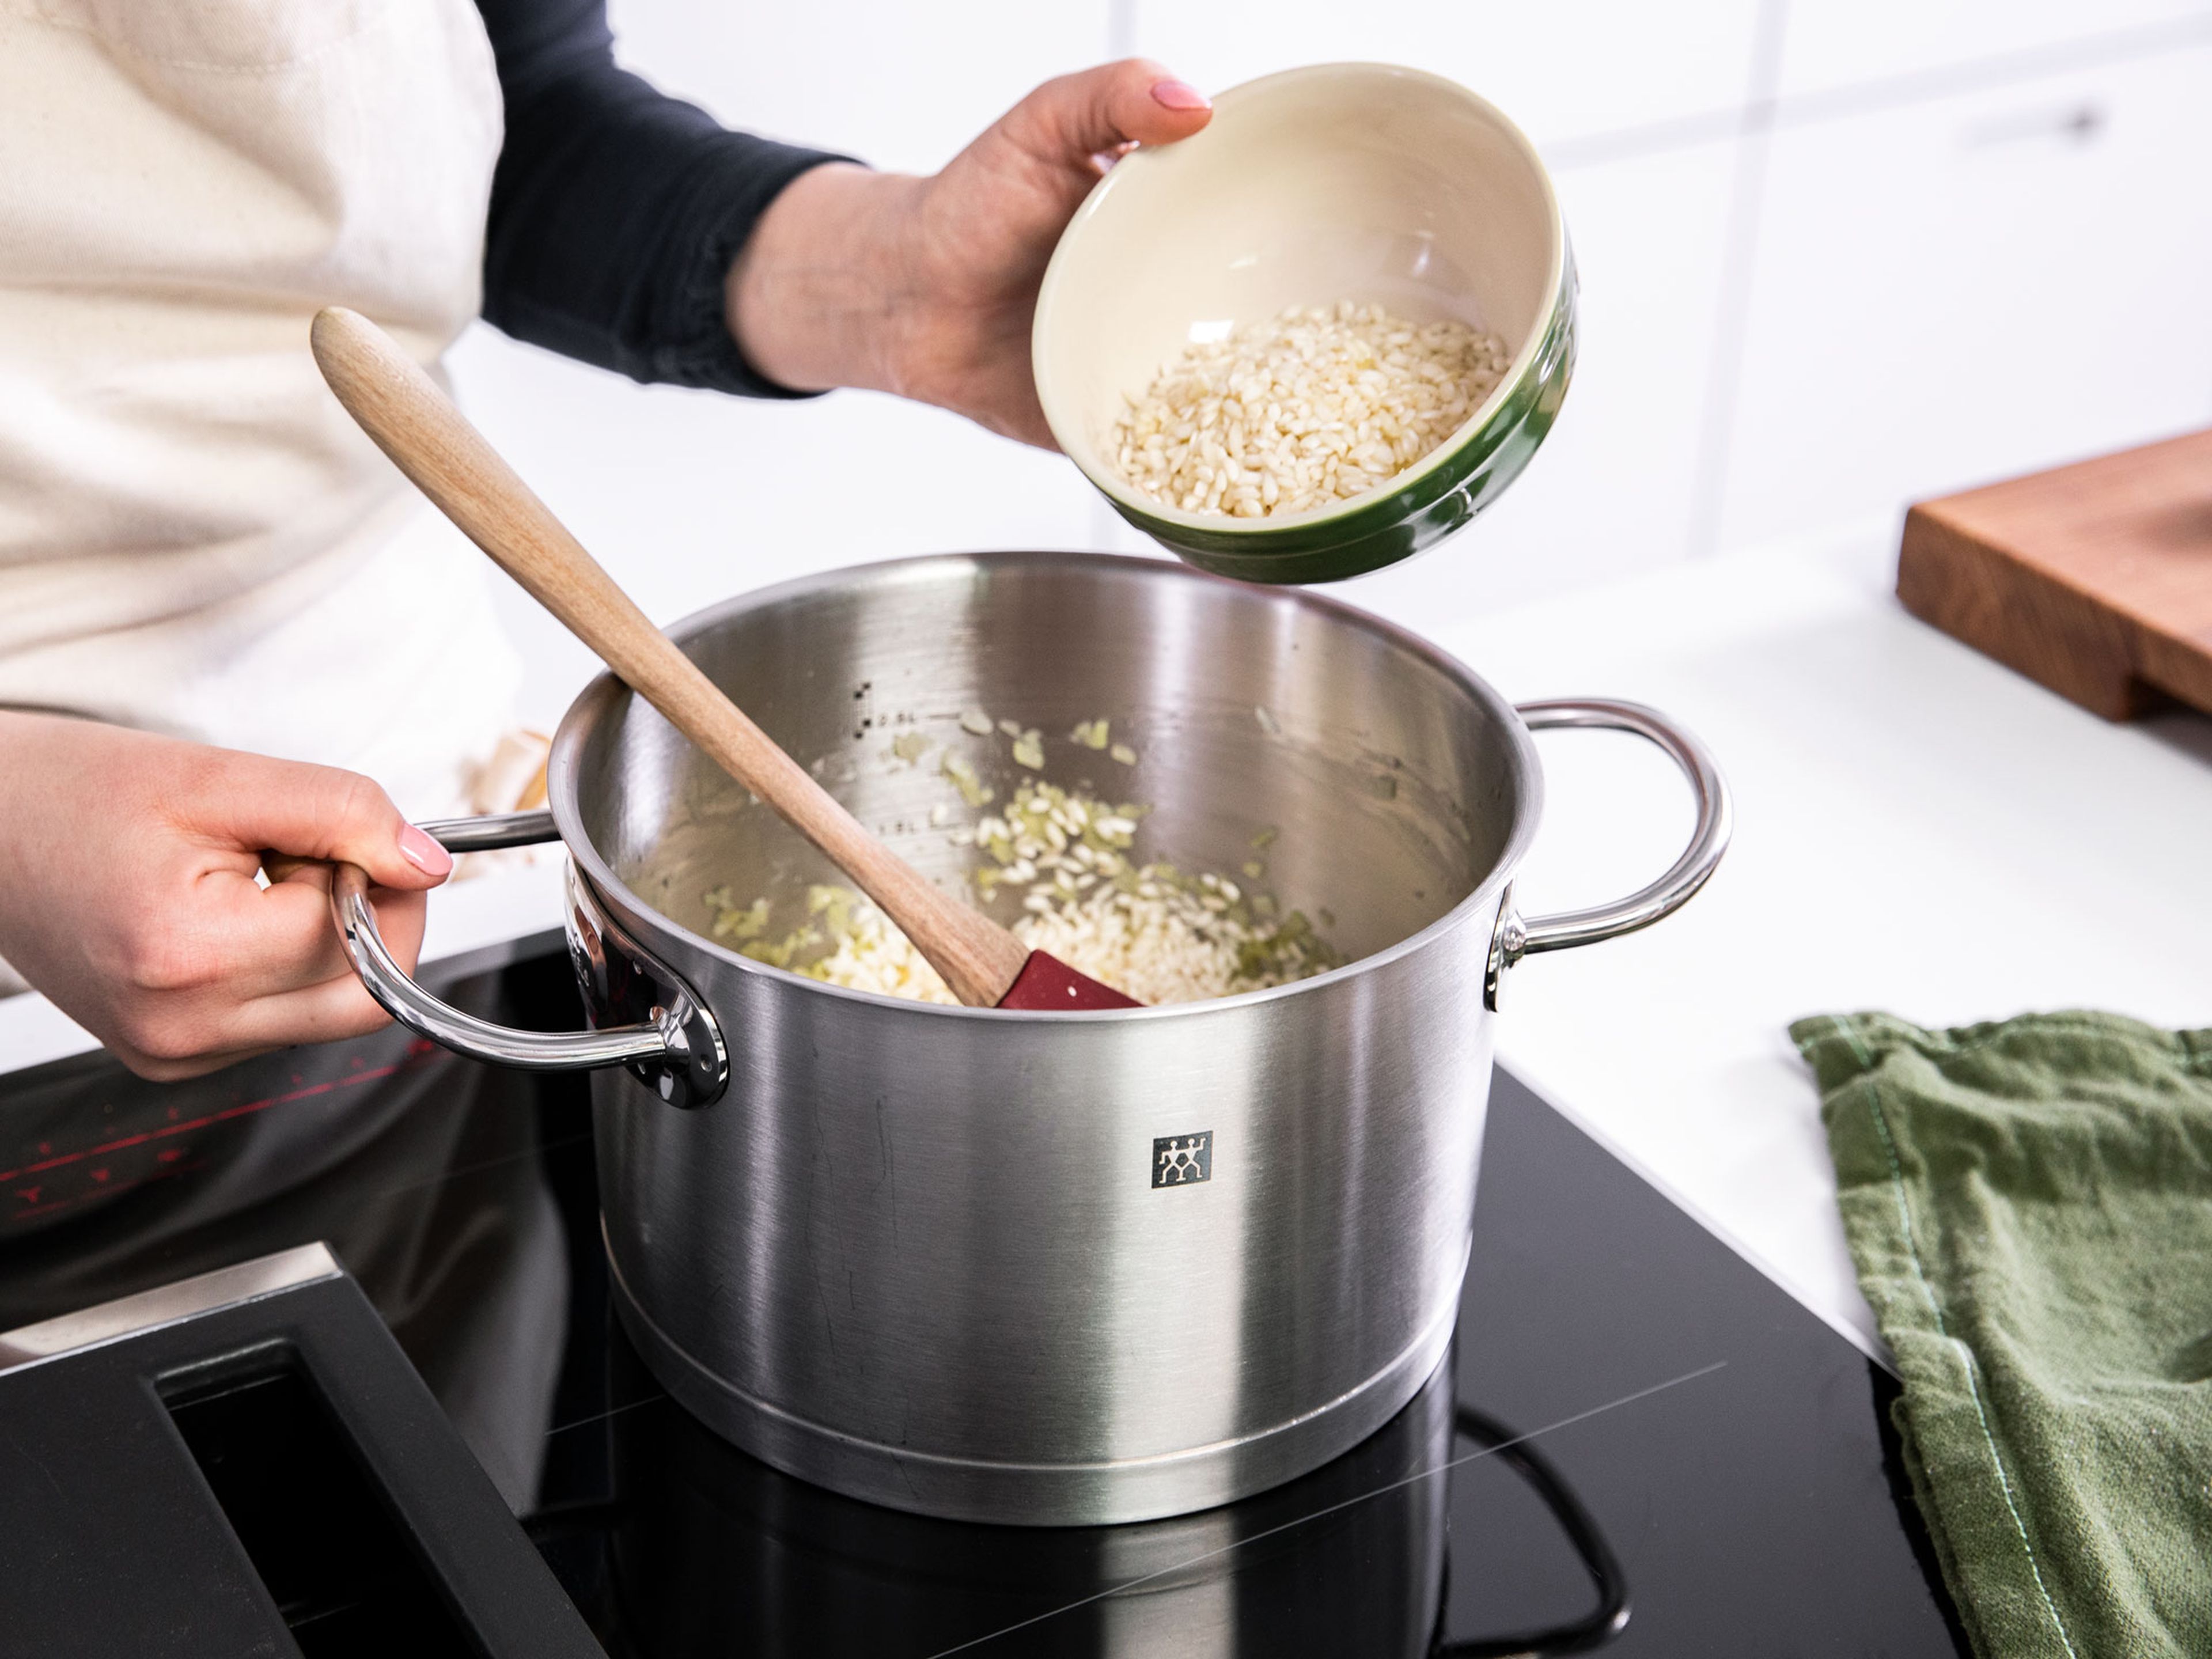 Zwiebeln und restlichen Knoblauch schälen und in feine Würfel schneiden. Restliches Olivenöl in einem großen Topf über mittlerer Hitze erwärmen und die Zwiebelwürfel darin ca. 1 Min. anschwitzen. Knoblauch dazugeben und ca. 2 Min. weiterbraten. Risottoreis dazugeben und ca. 1 Min. anschwitzen. Dabei gut umrühren, damit der Reis vom Olivenöl ummantelt wird.